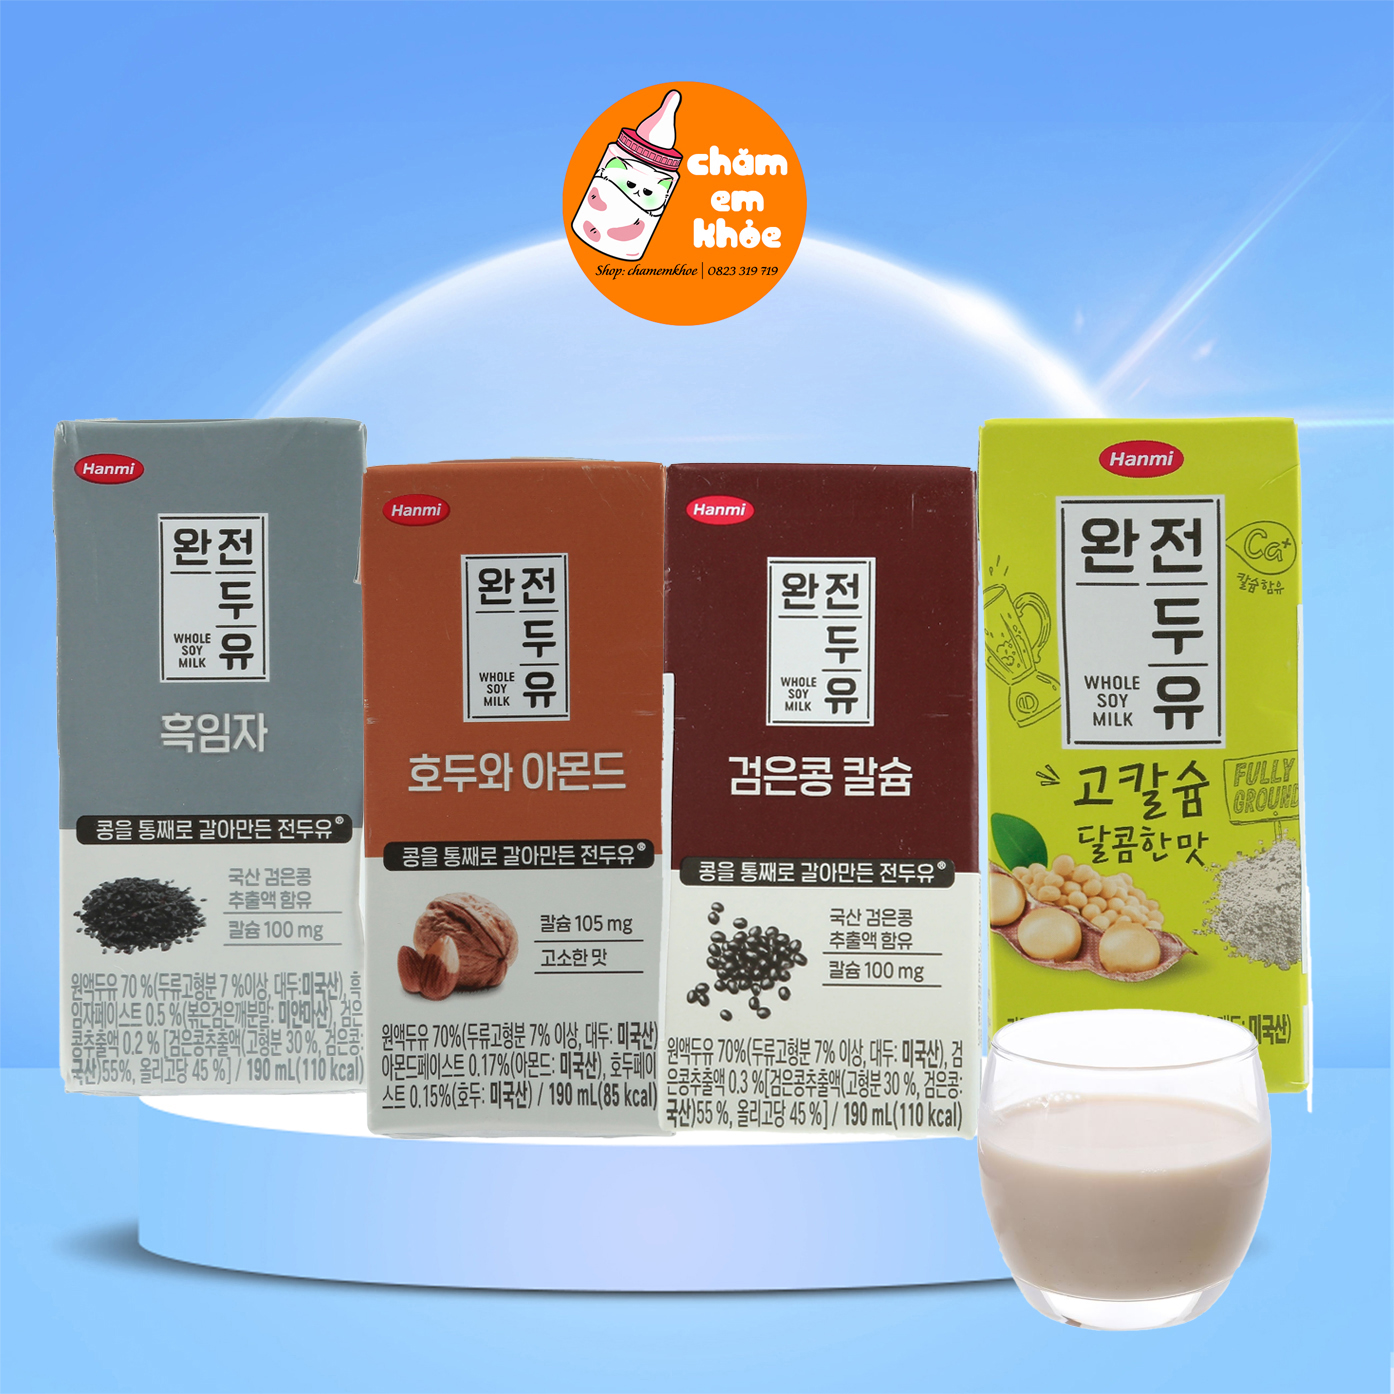 Hộp Sữa Nước Đậu Nguyên Chất Hanmi Hàn Quốc Đủ vị nước óc chó đậu đen hạnh